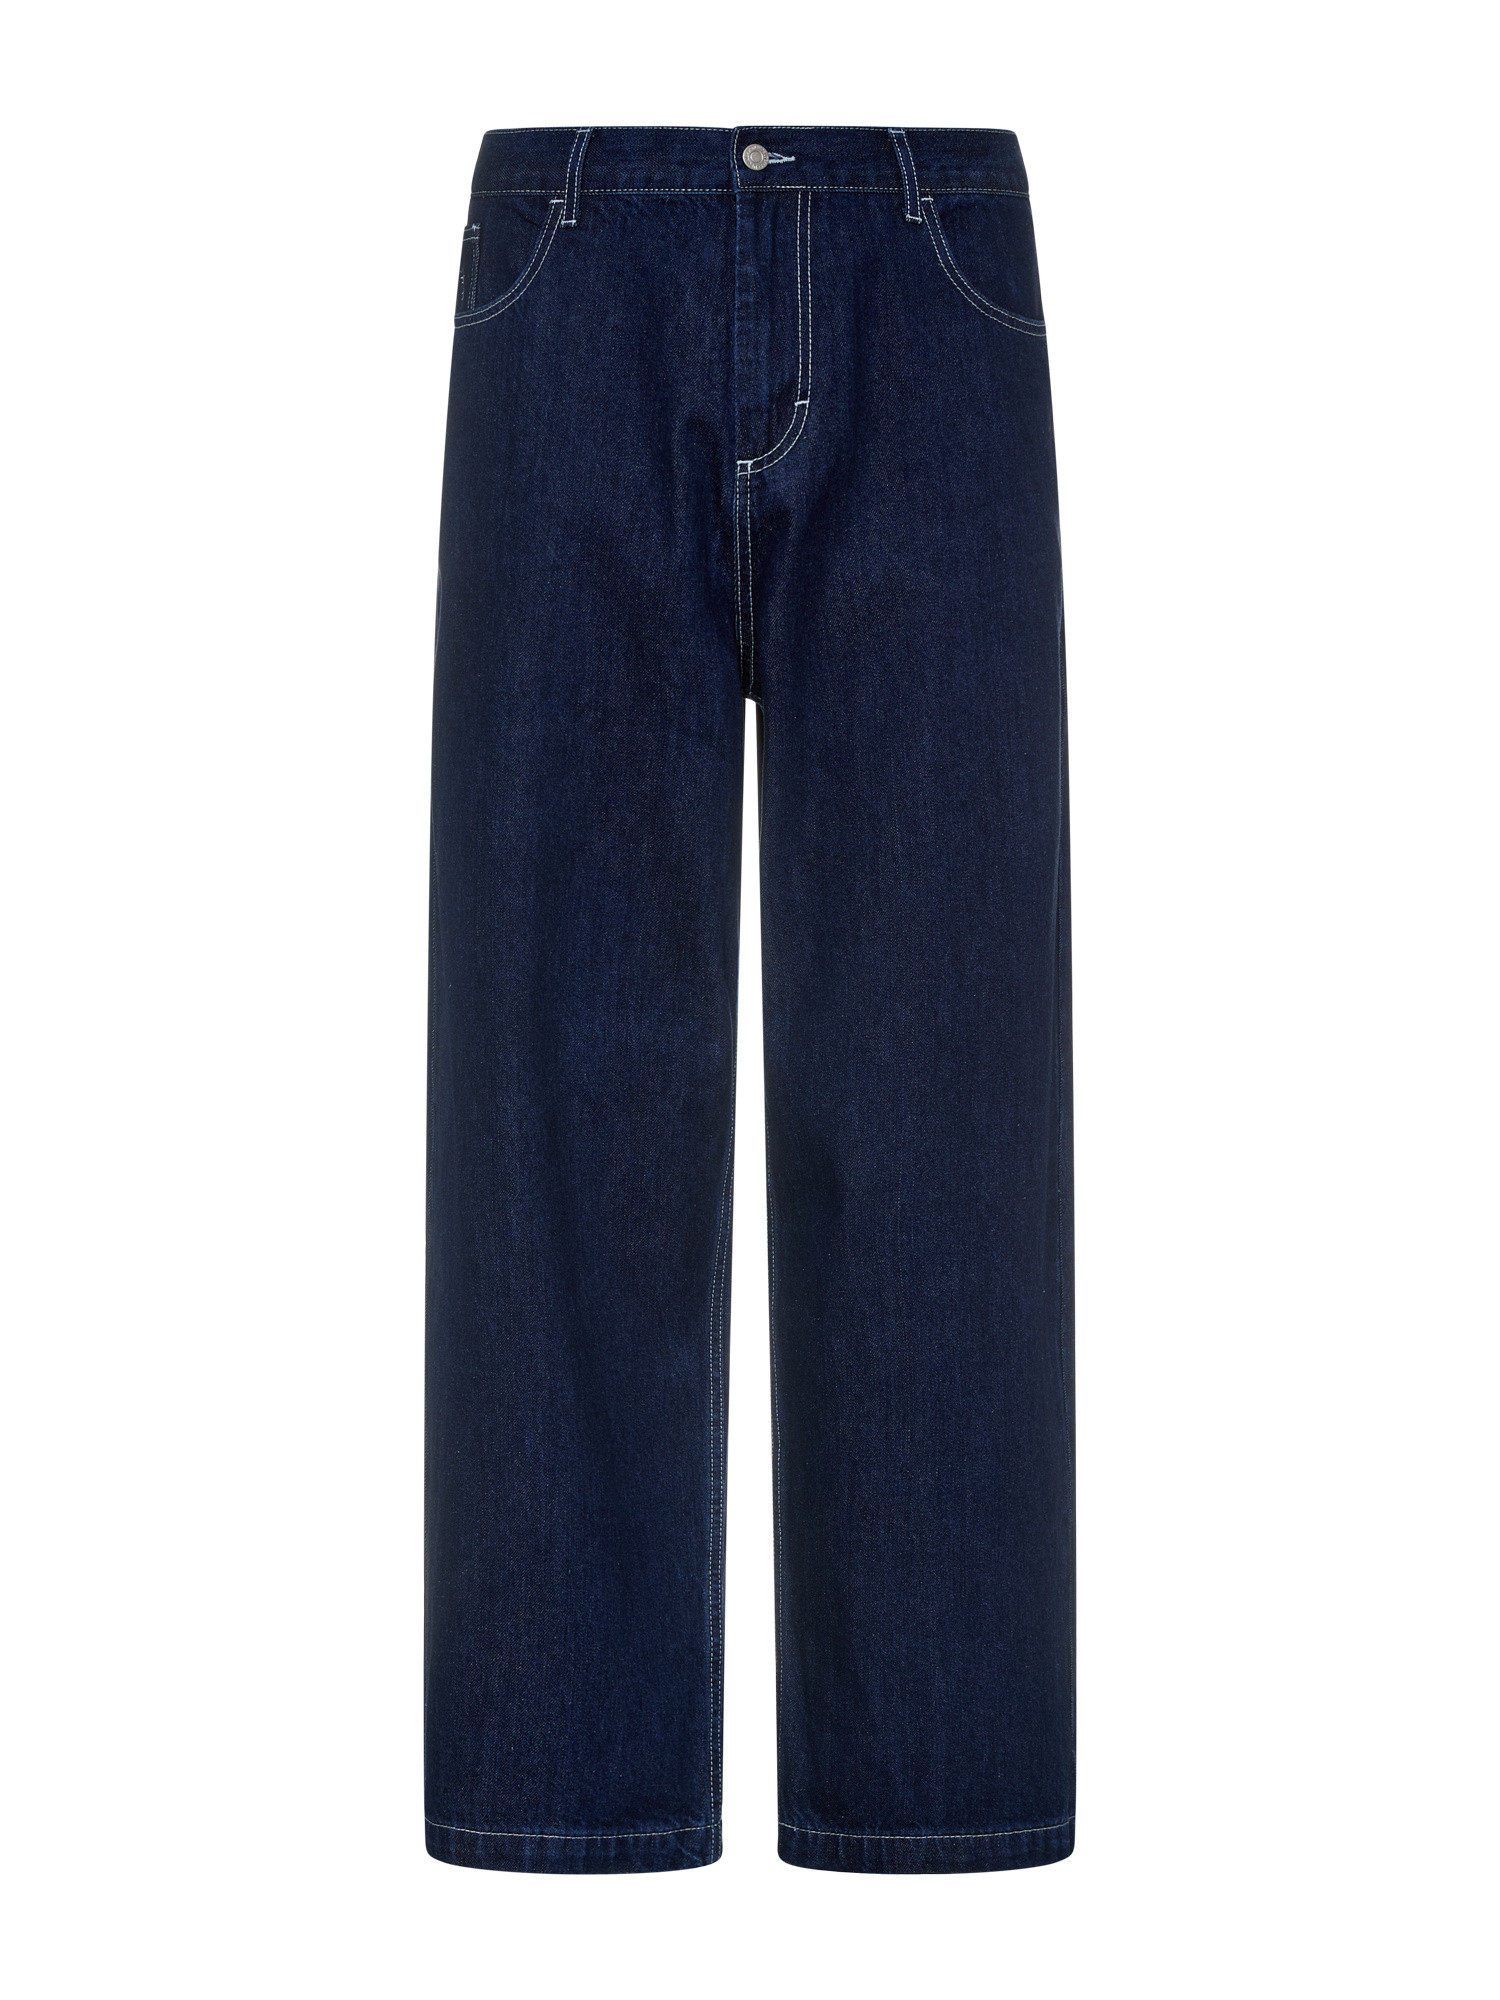 Обычный джинсовые брюки Giga Usual, темно-синий